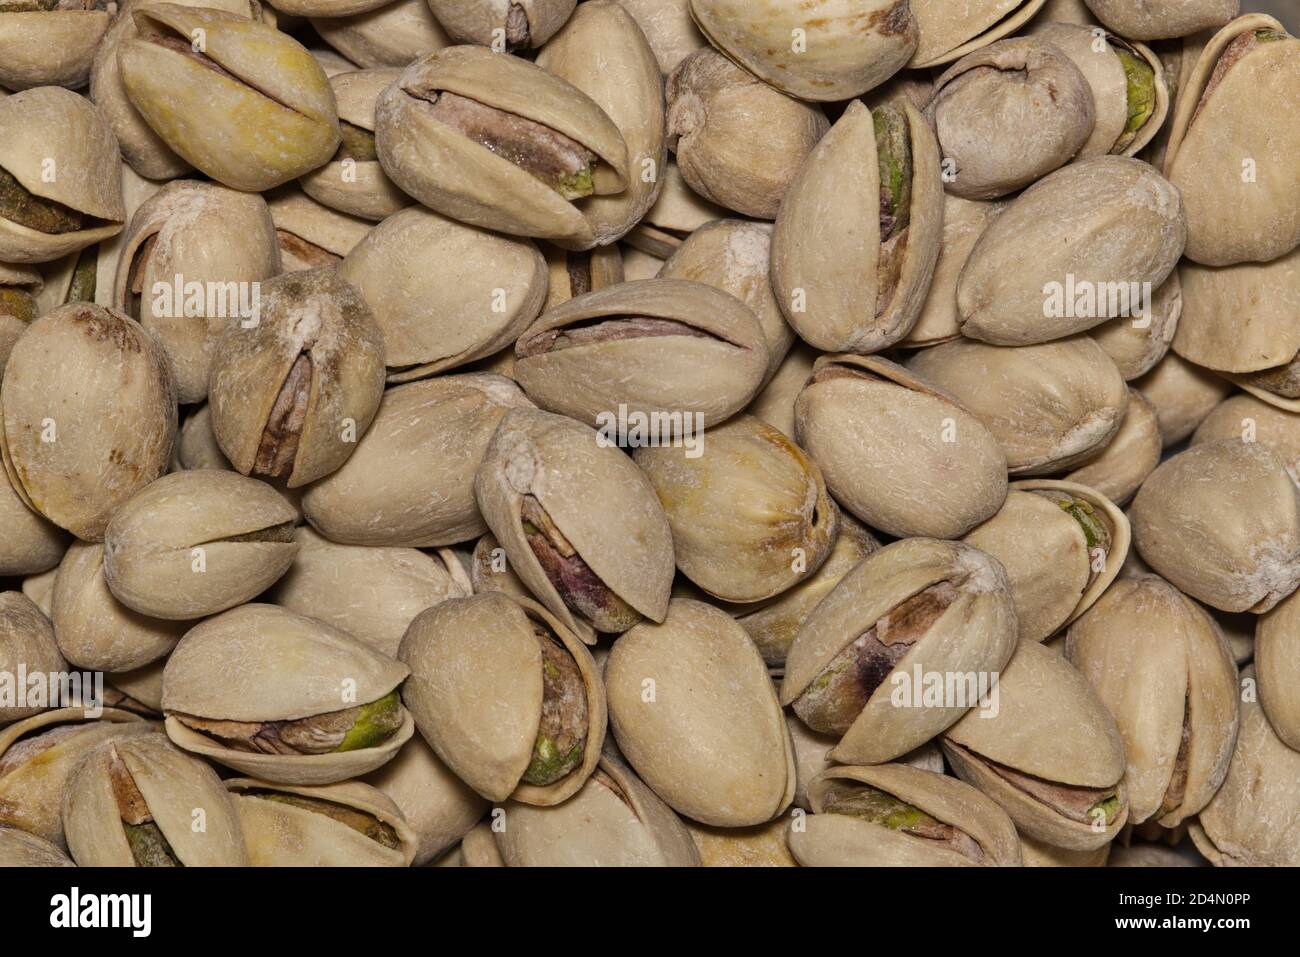 Image macro de pistaches éparpillées. Les arbres sont originaires de l'Asie et du Moyen-Orient. Banque D'Images